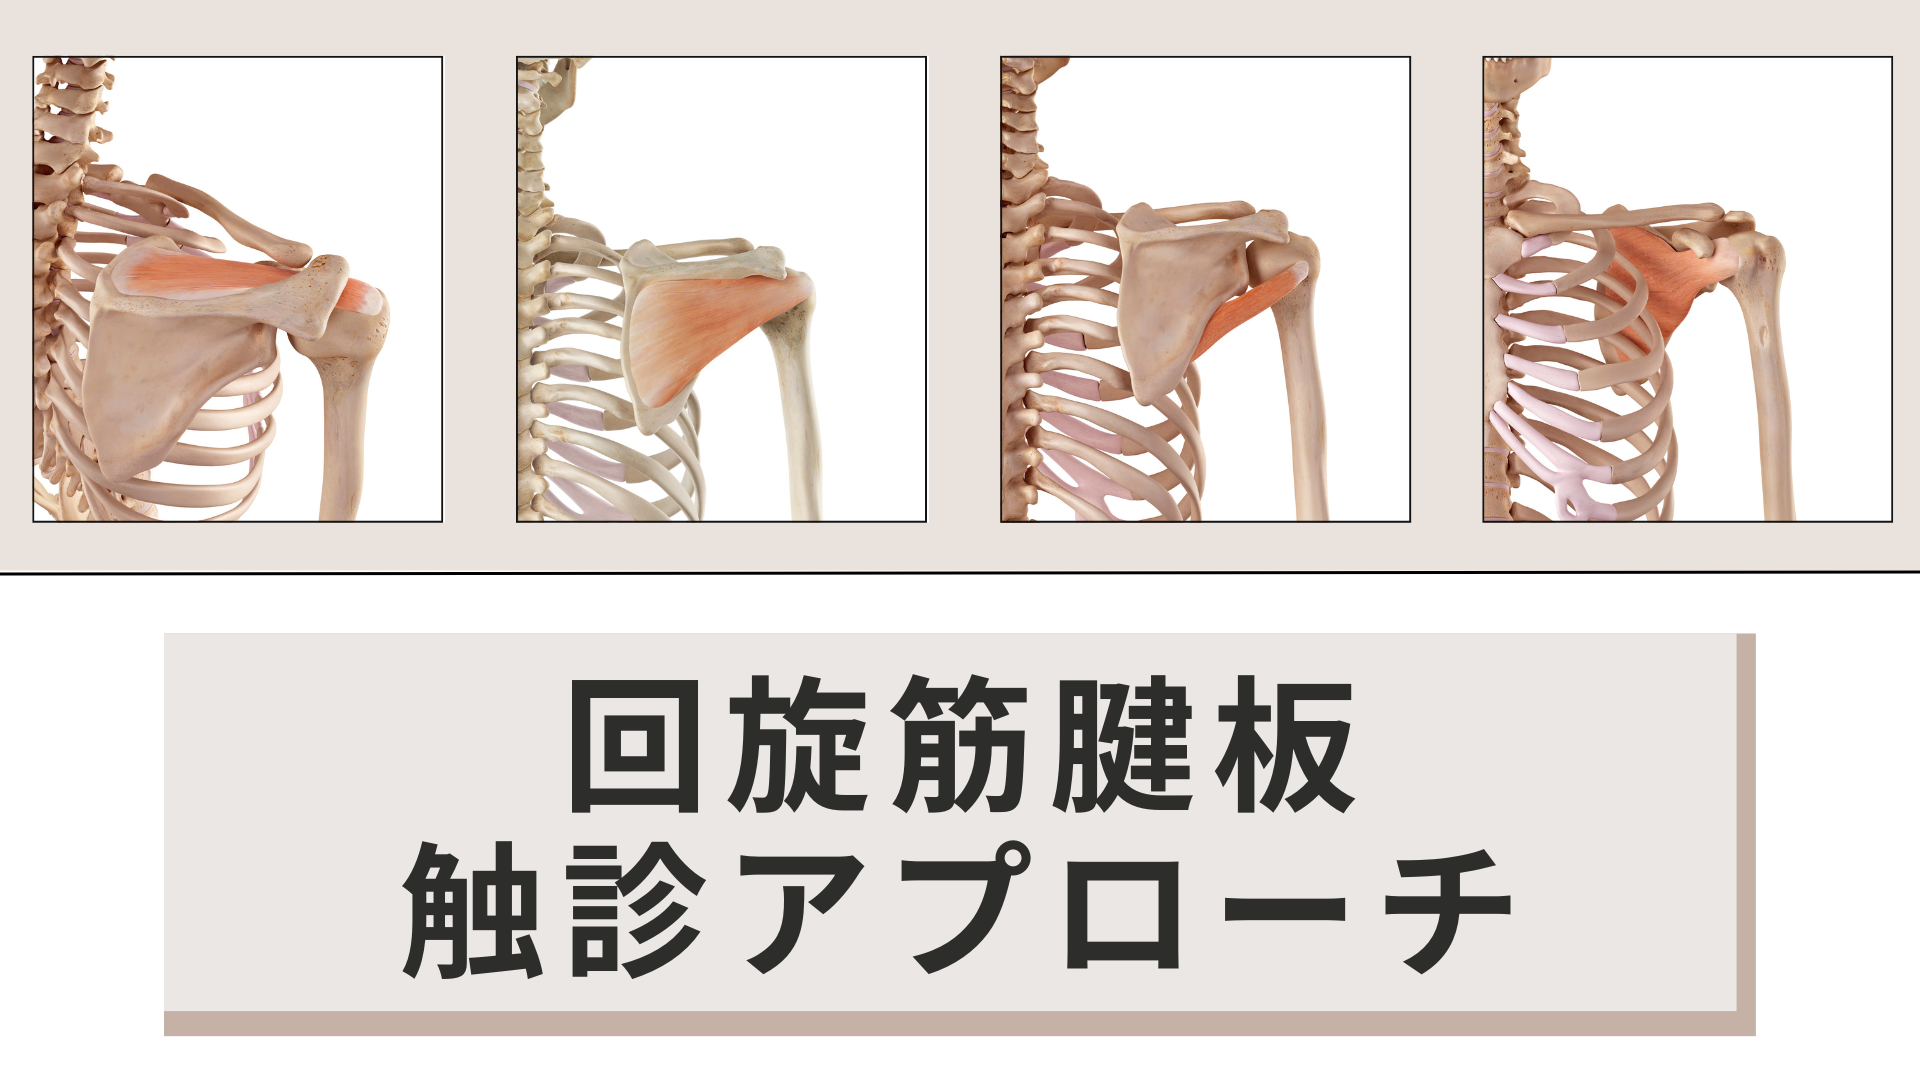 回旋筋腱板の機能解剖学と触診アプローチ